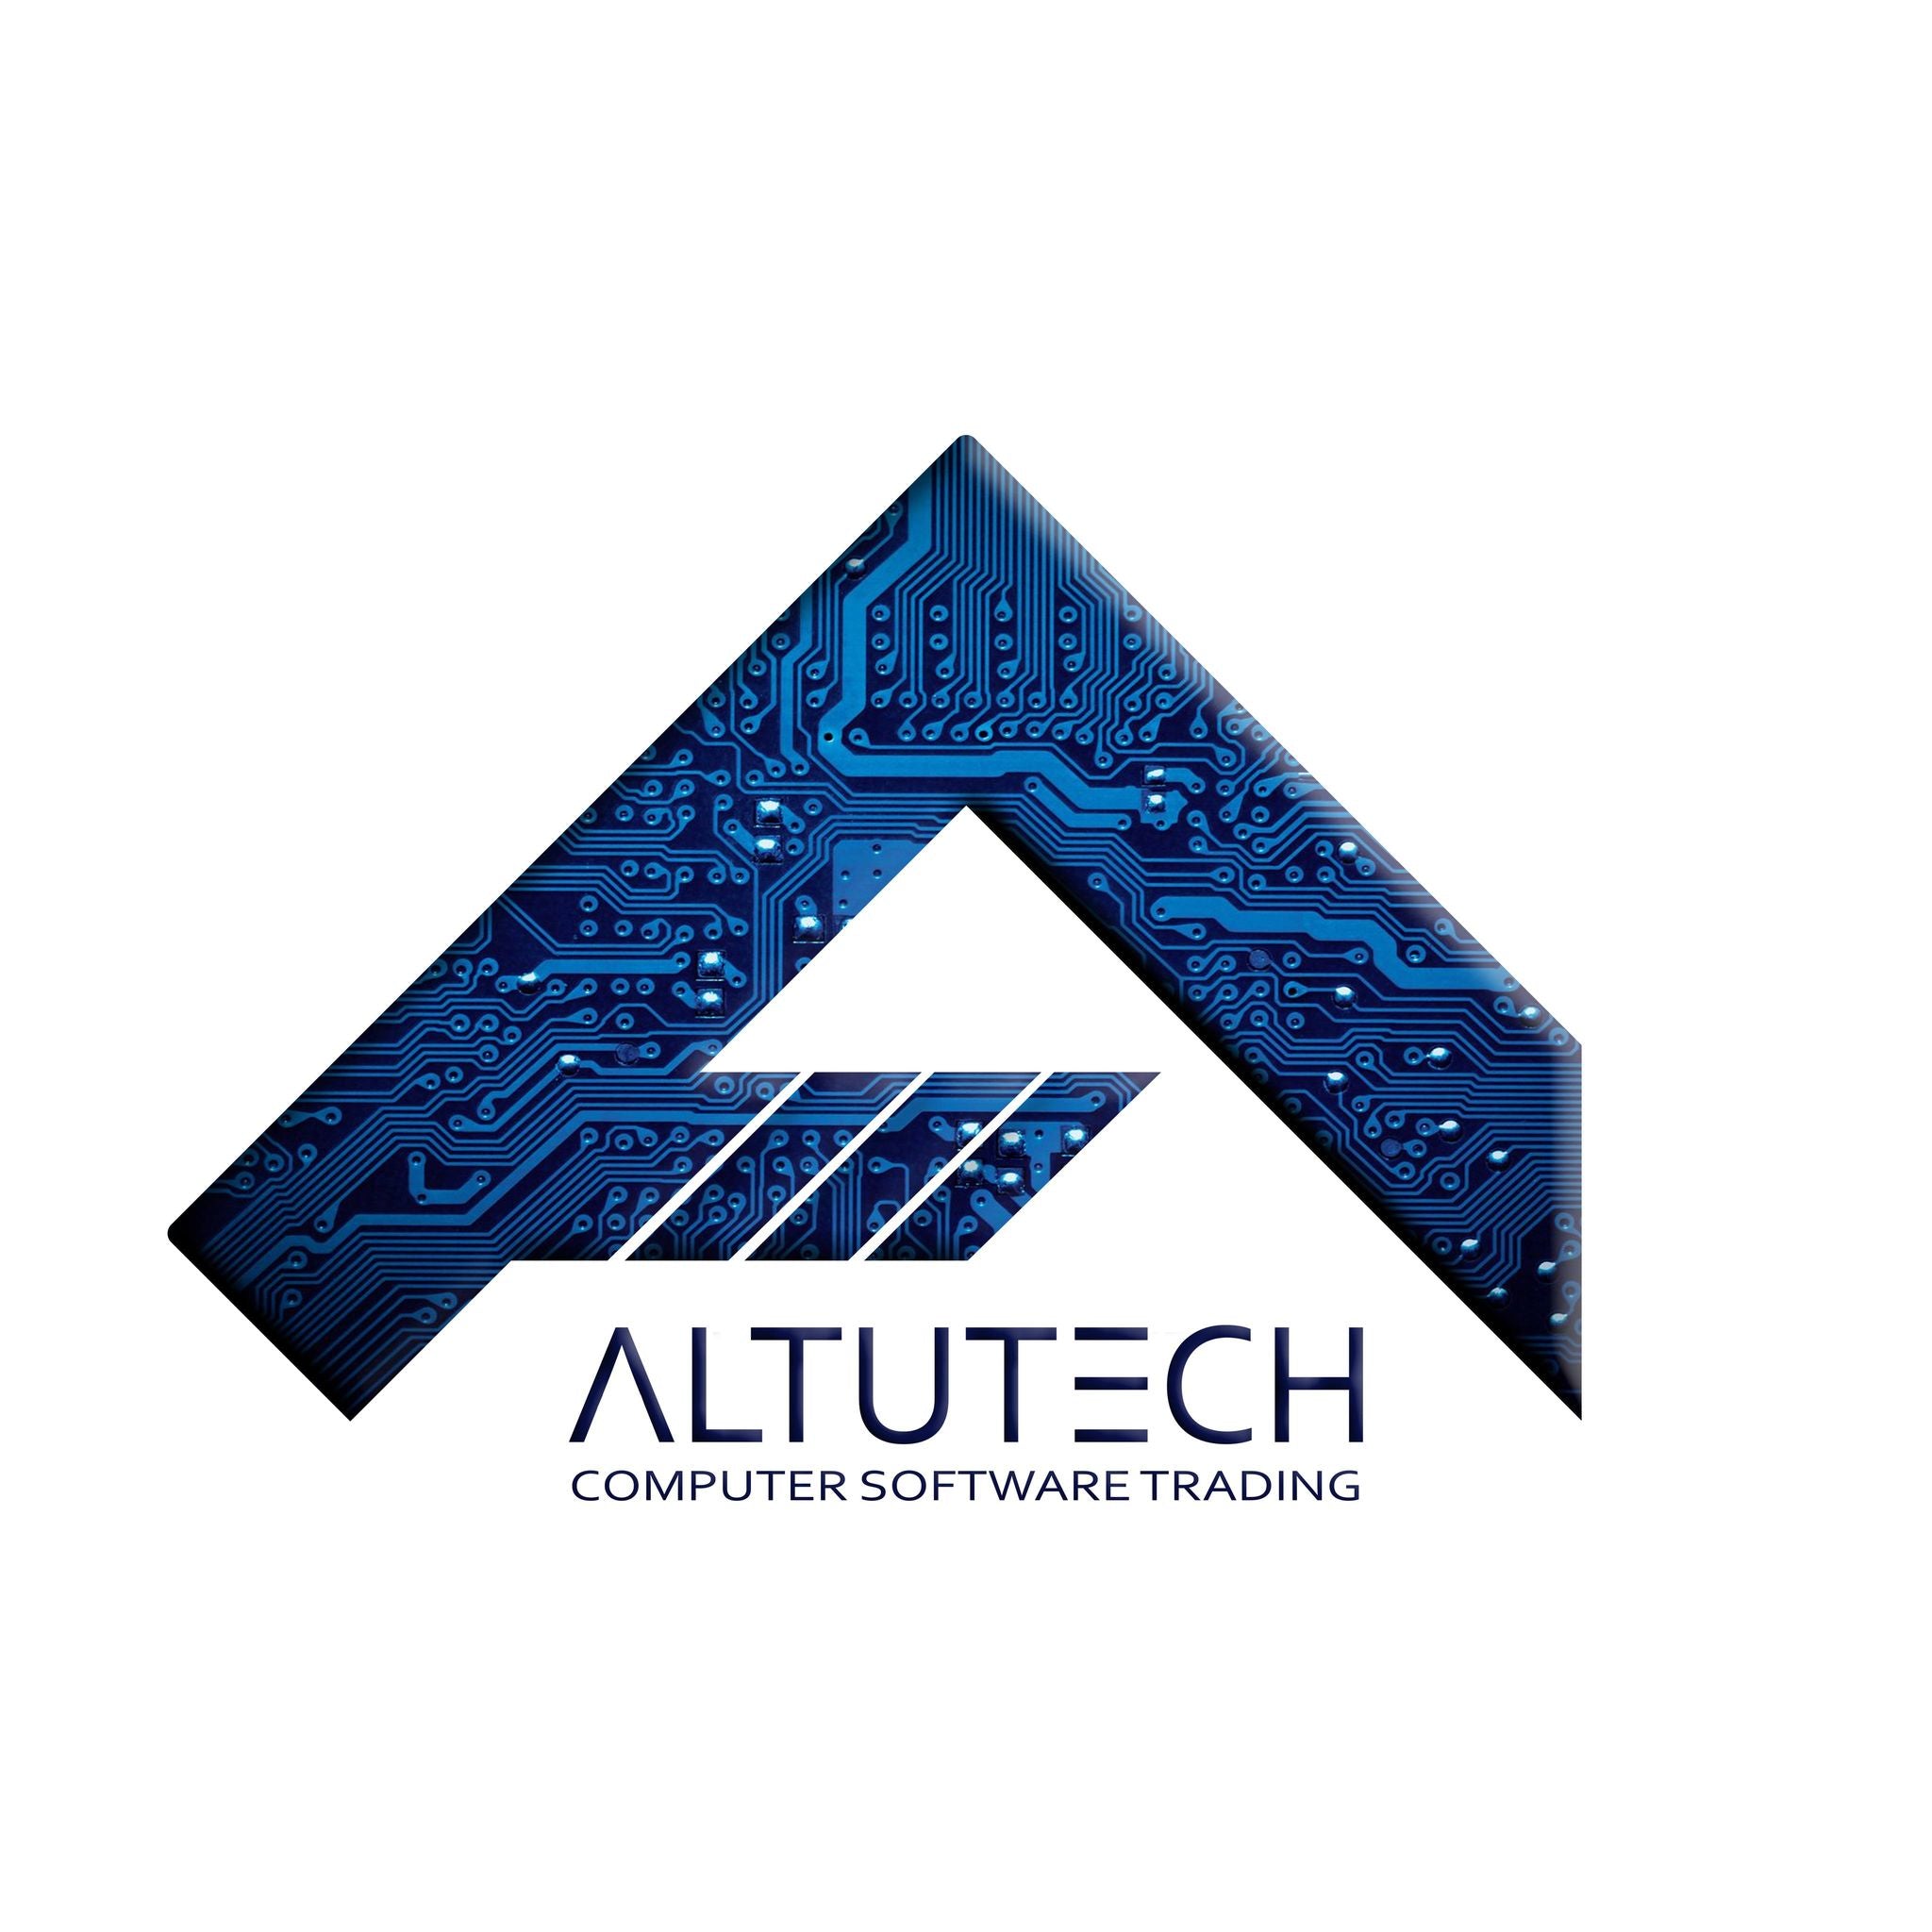 Altutech Computer Software Trading